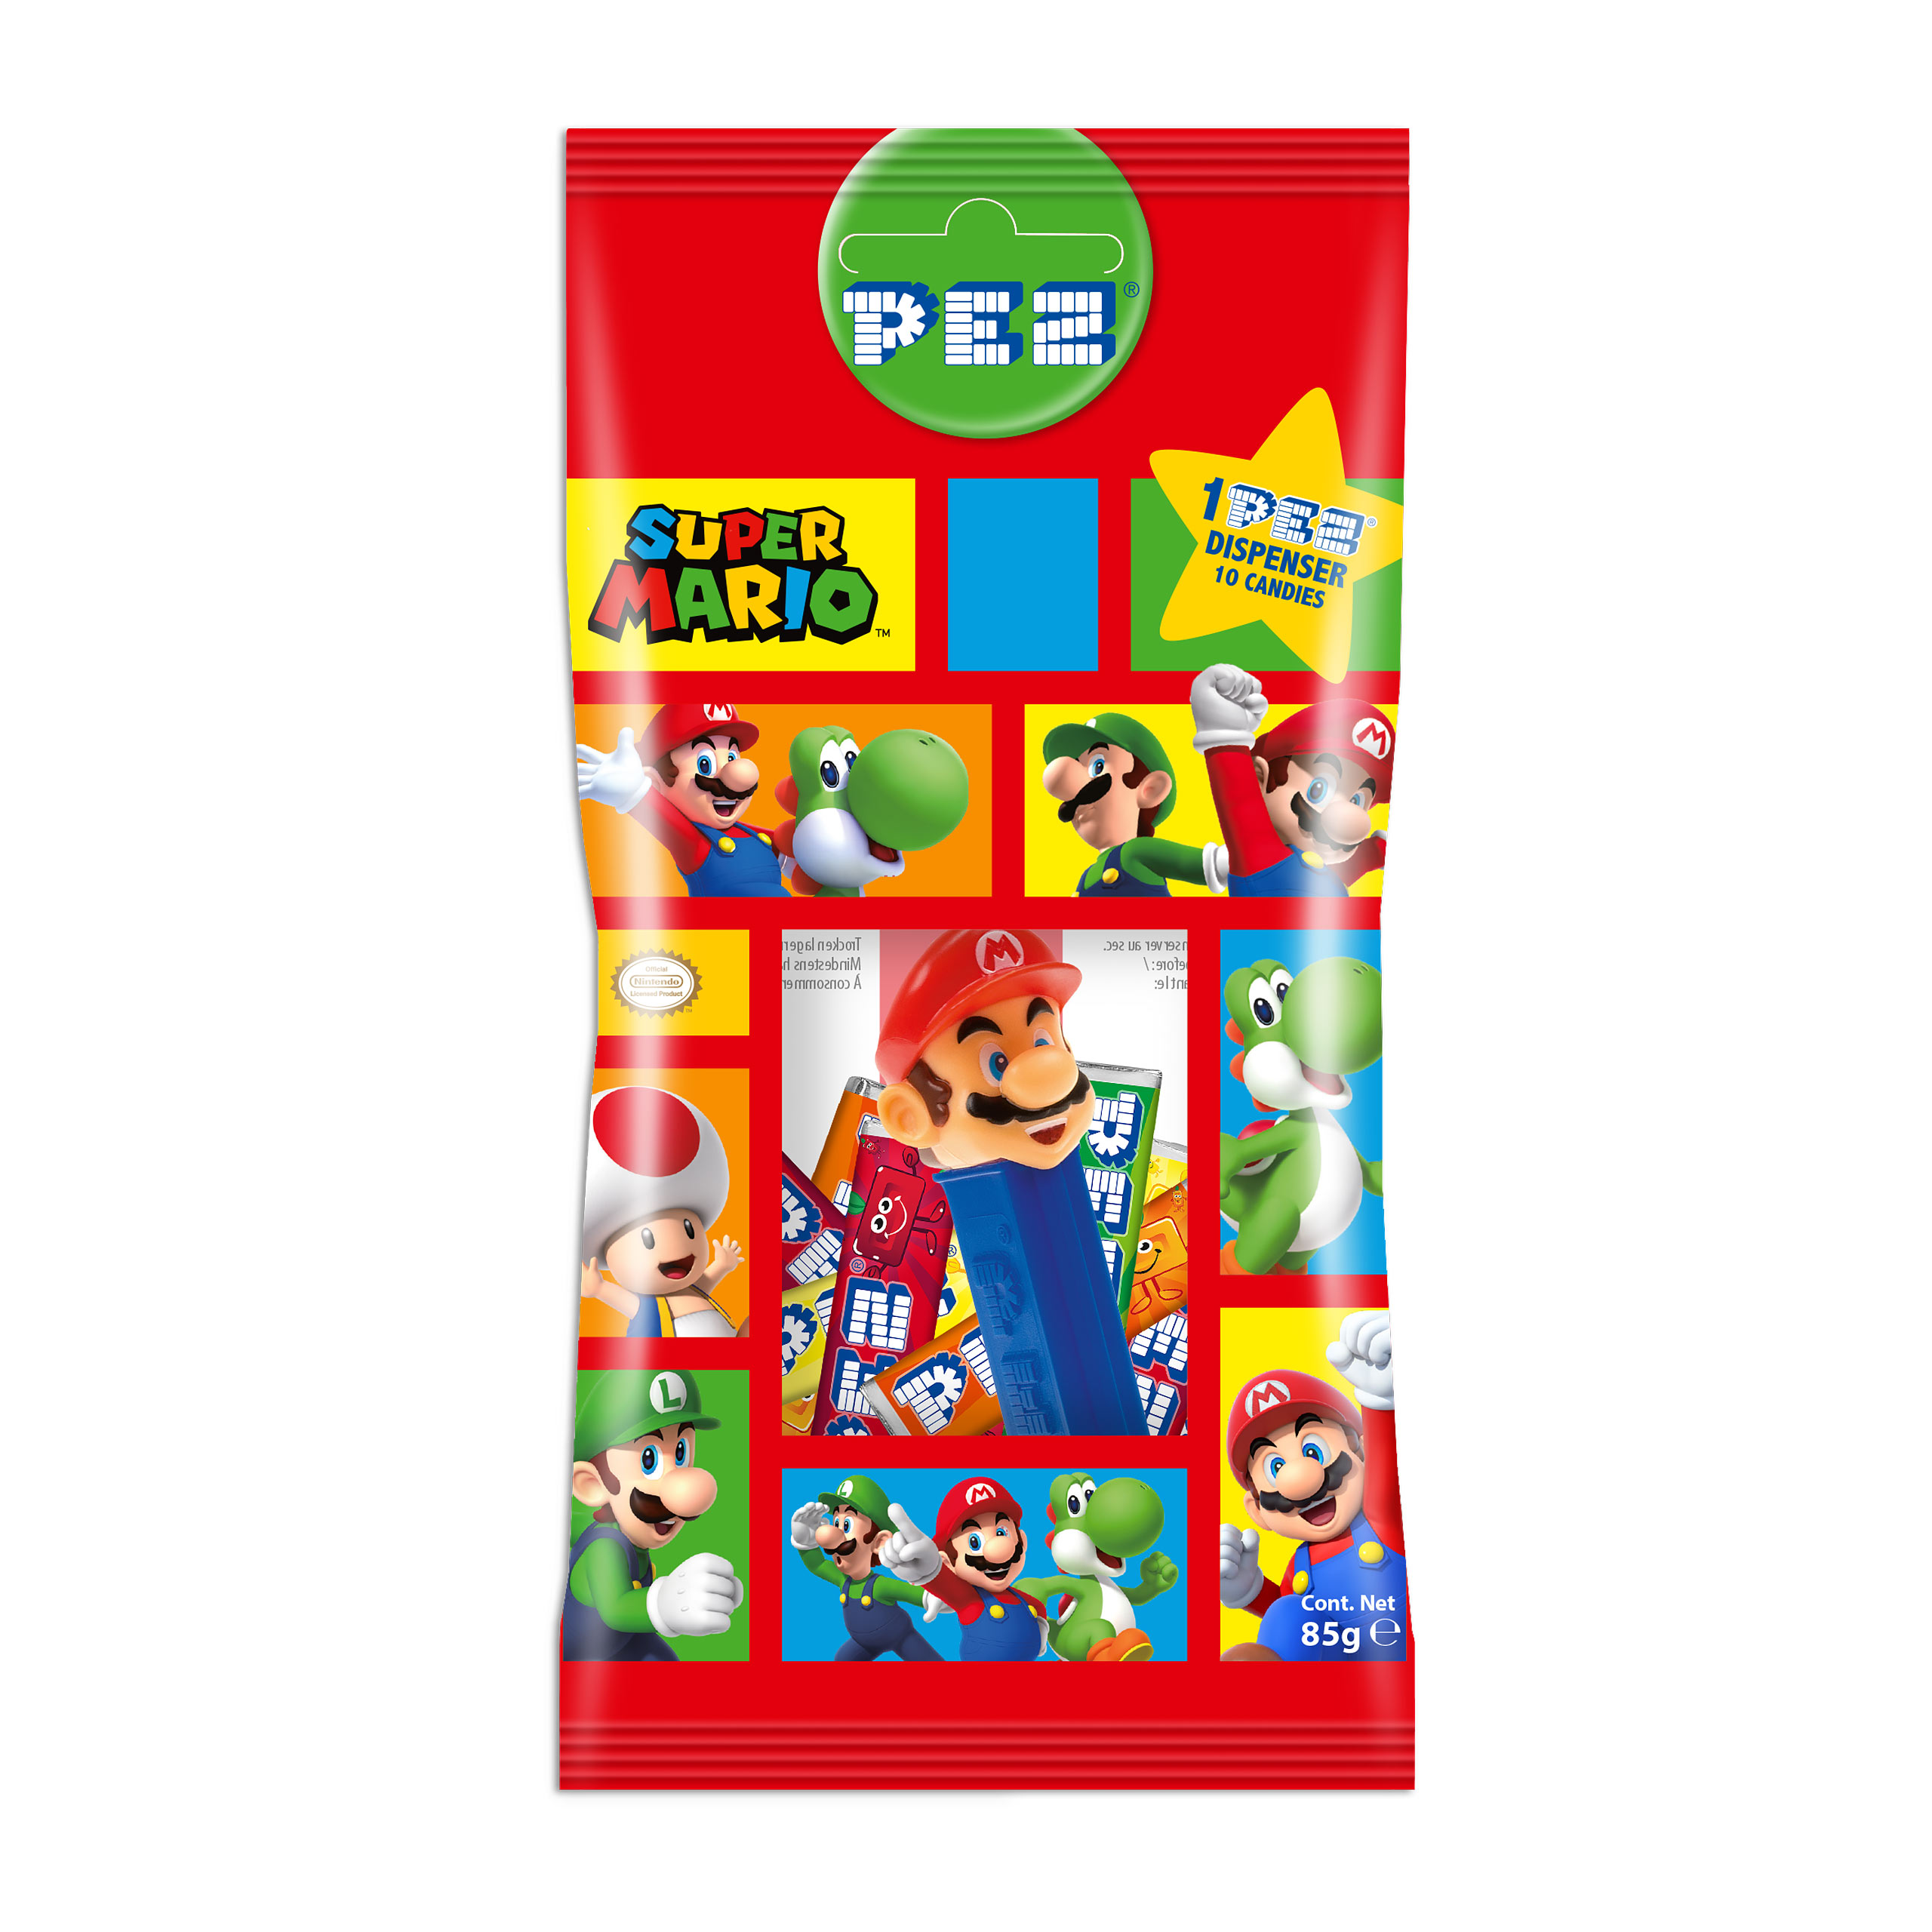 Super Mario - PEZ Candies 10 Pack with Dispenser